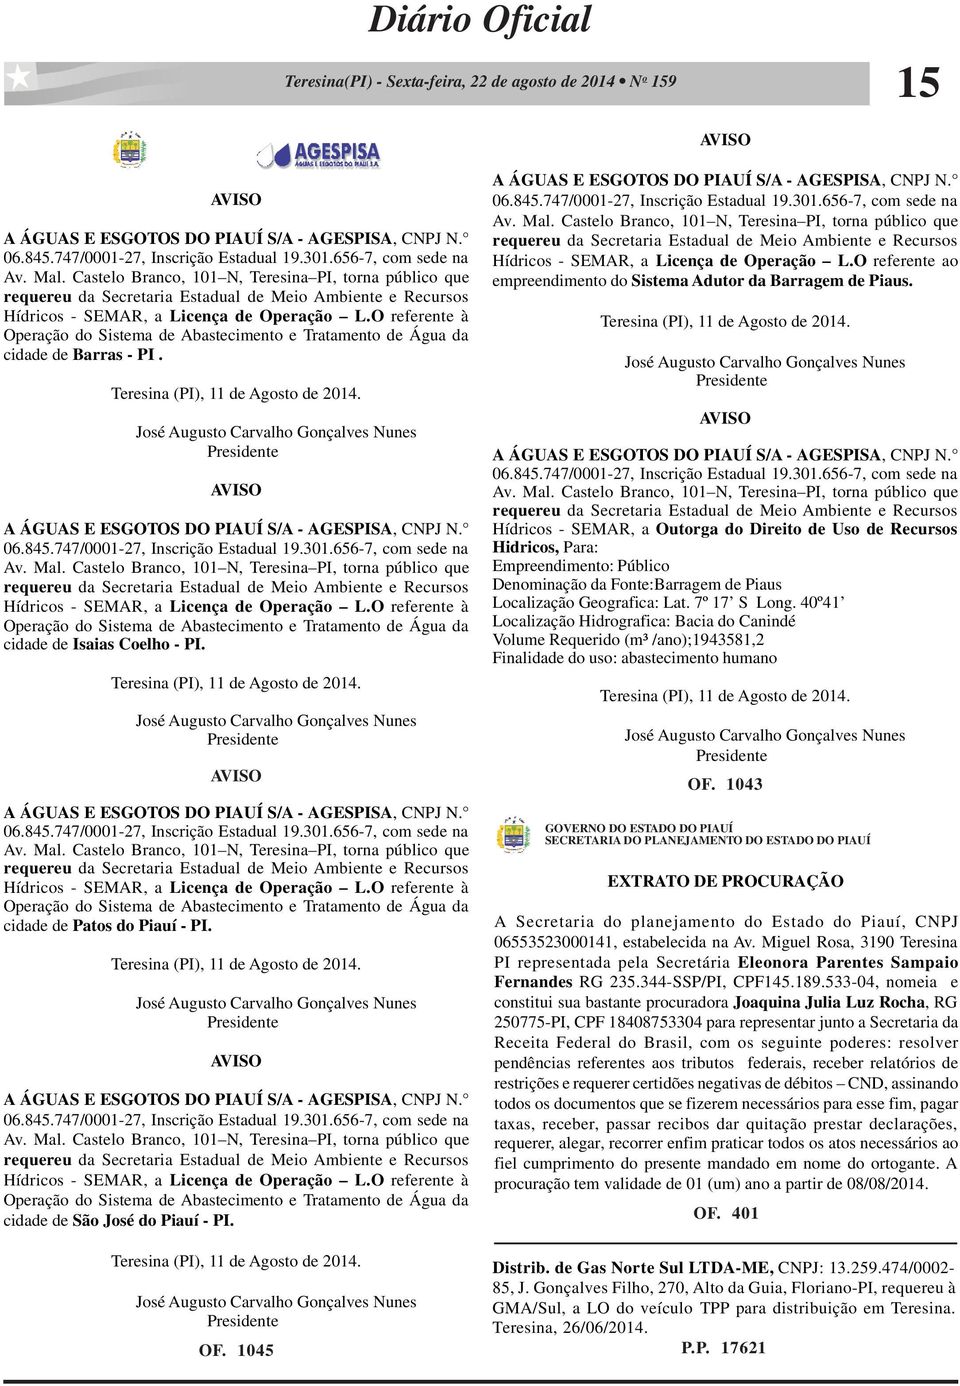 O referente à Operação do Sistema de Abastecimento e Tratamento de Água da cidade de Barras - PI. Teresina (PI), 11 de Agosto de 2014.